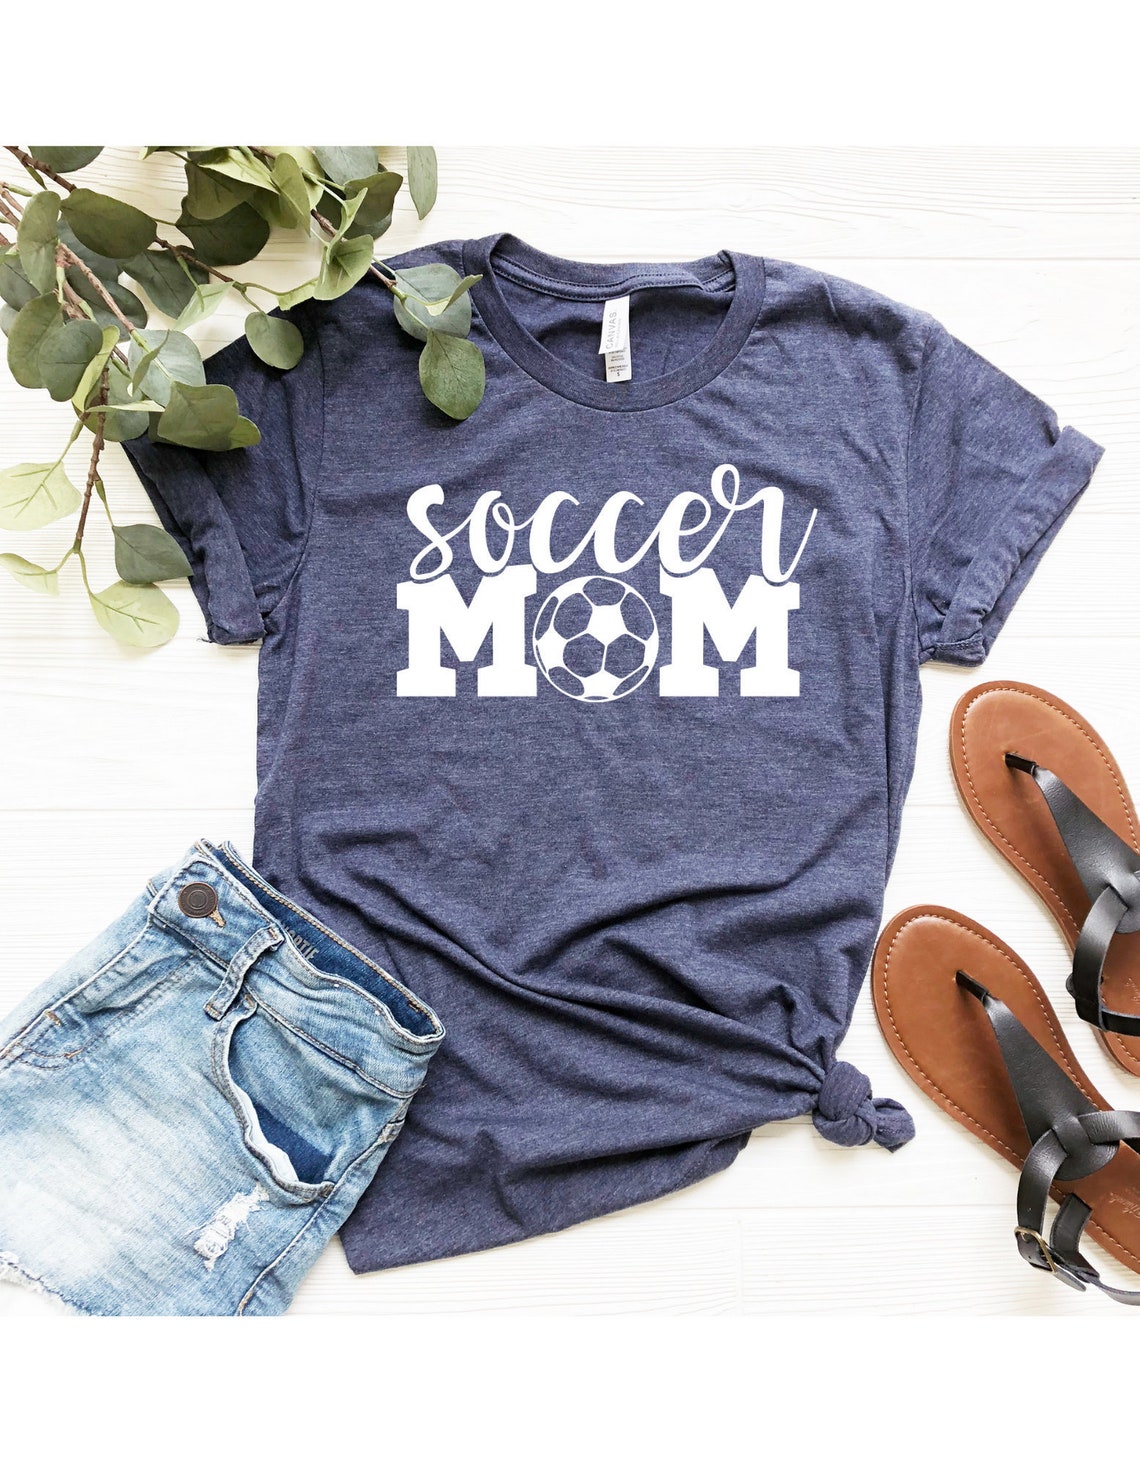 Soccer Mom Shirt, Soccer Team